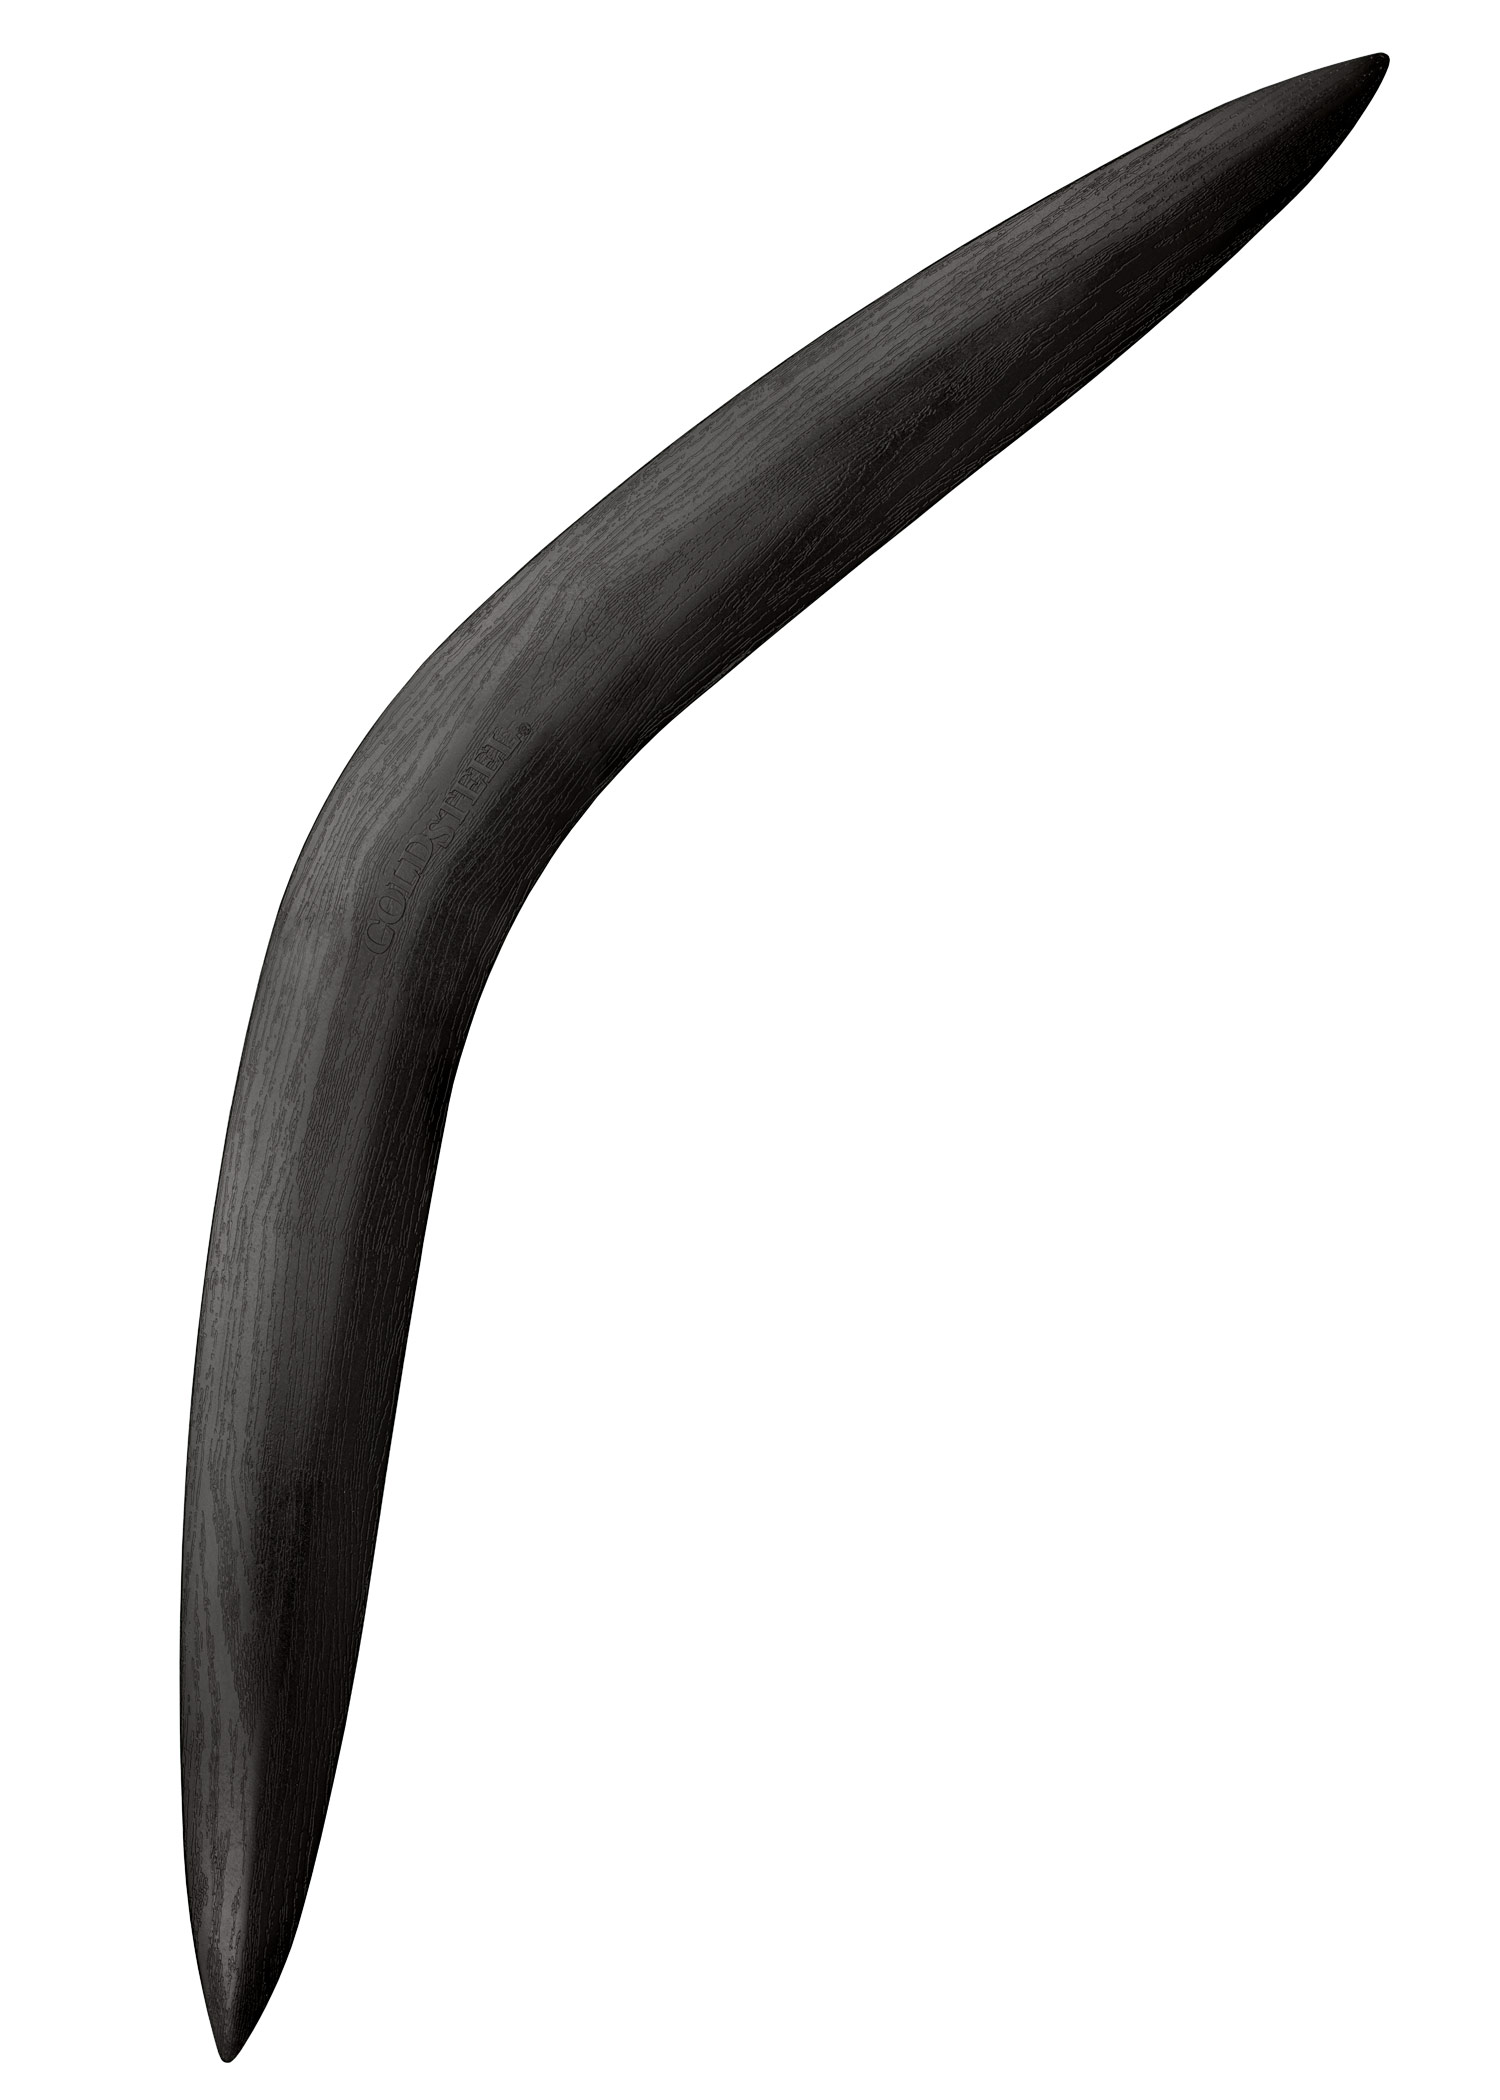 Bumerang, 2017er Modell